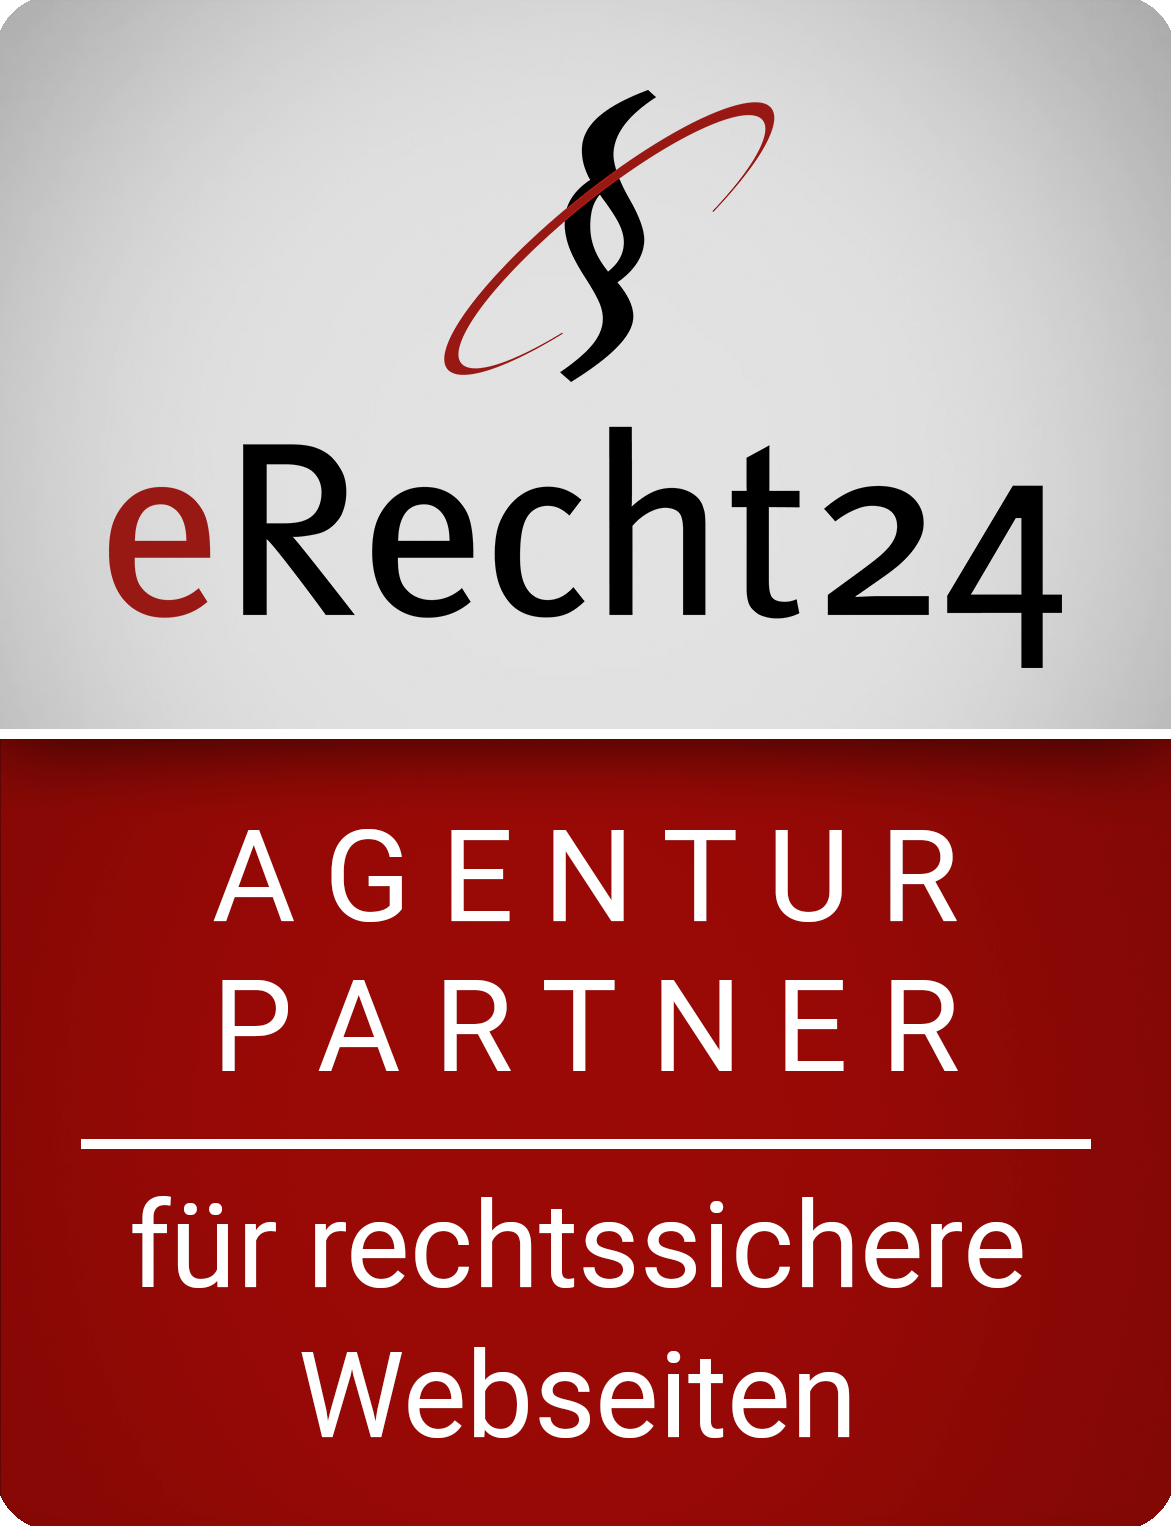 Partner von eRecht24